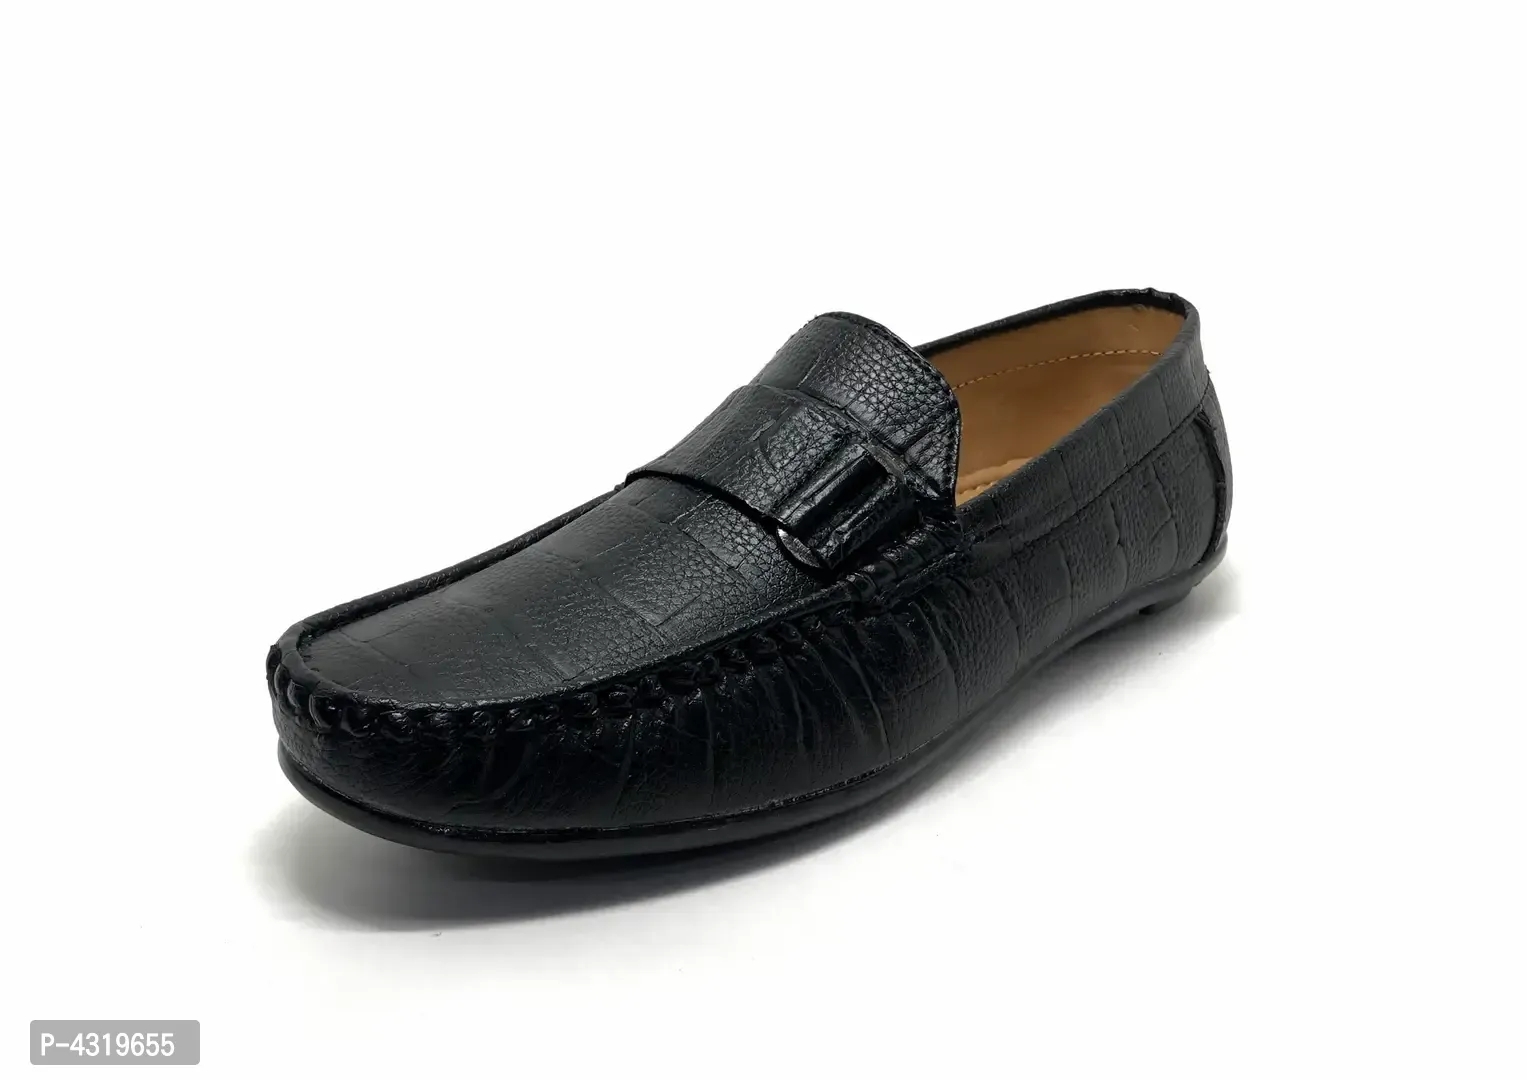 Elite Black Synthetic Solid Loafers For Men - Black, 7UK